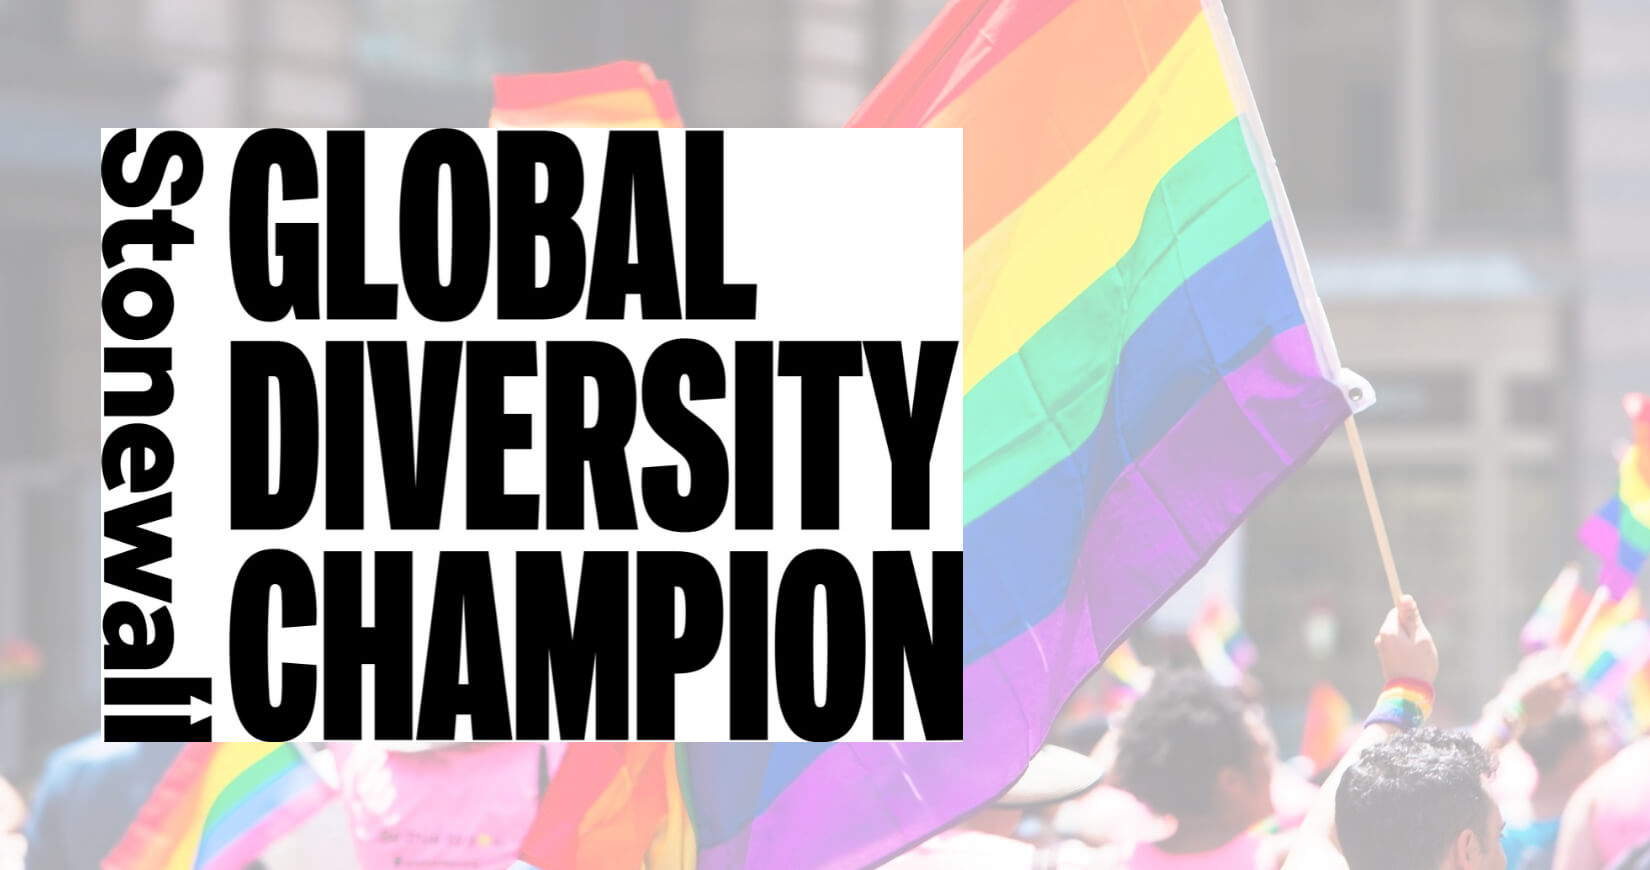 5 of 13 logos - Stonewall Diversity